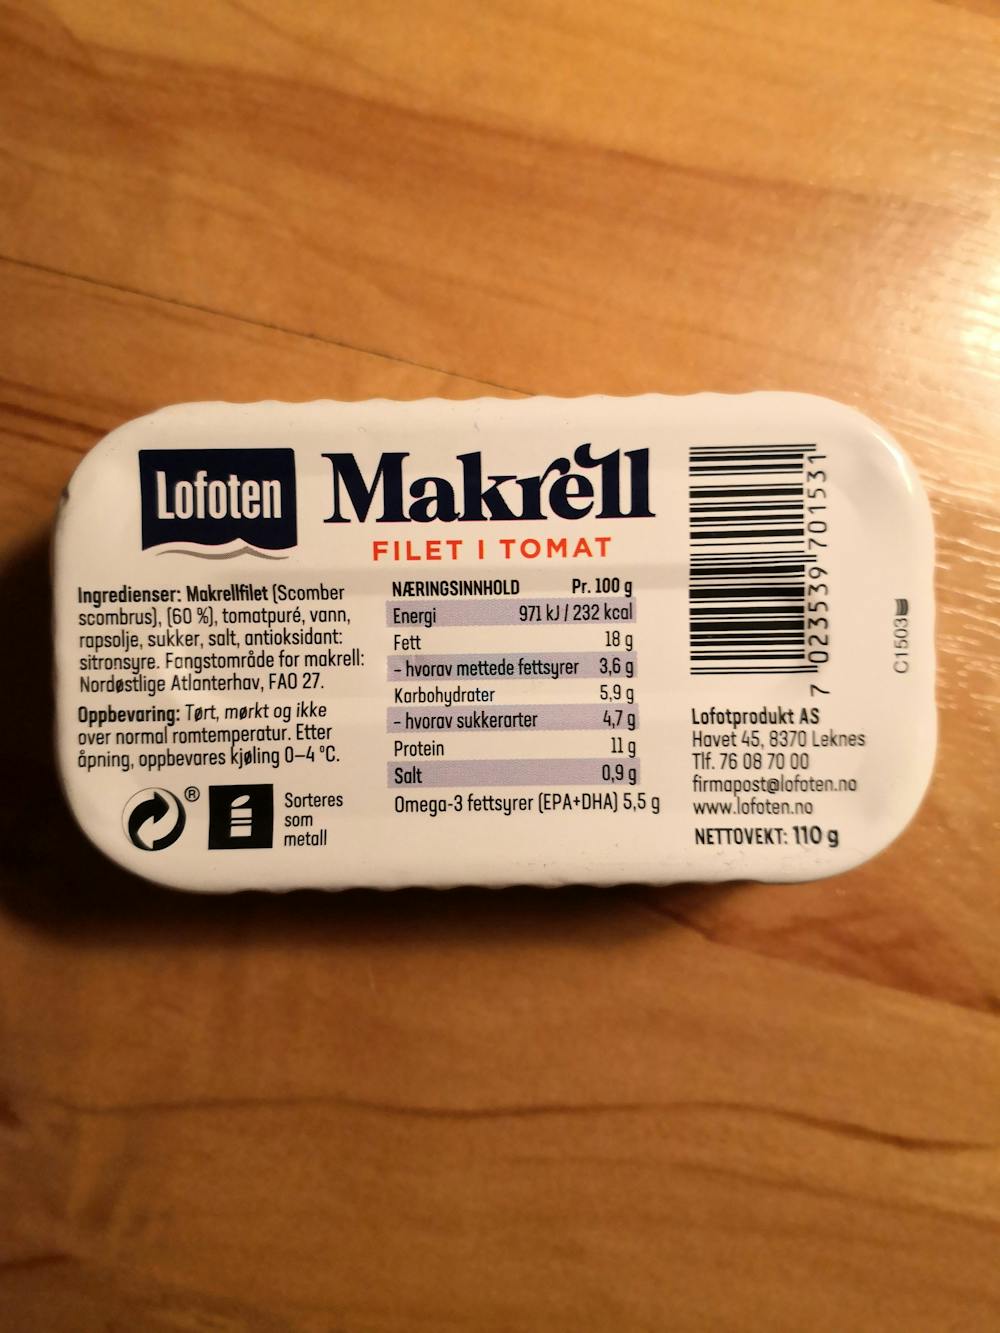 Ingredienslisten til Lofoten Makrell filet i tomat